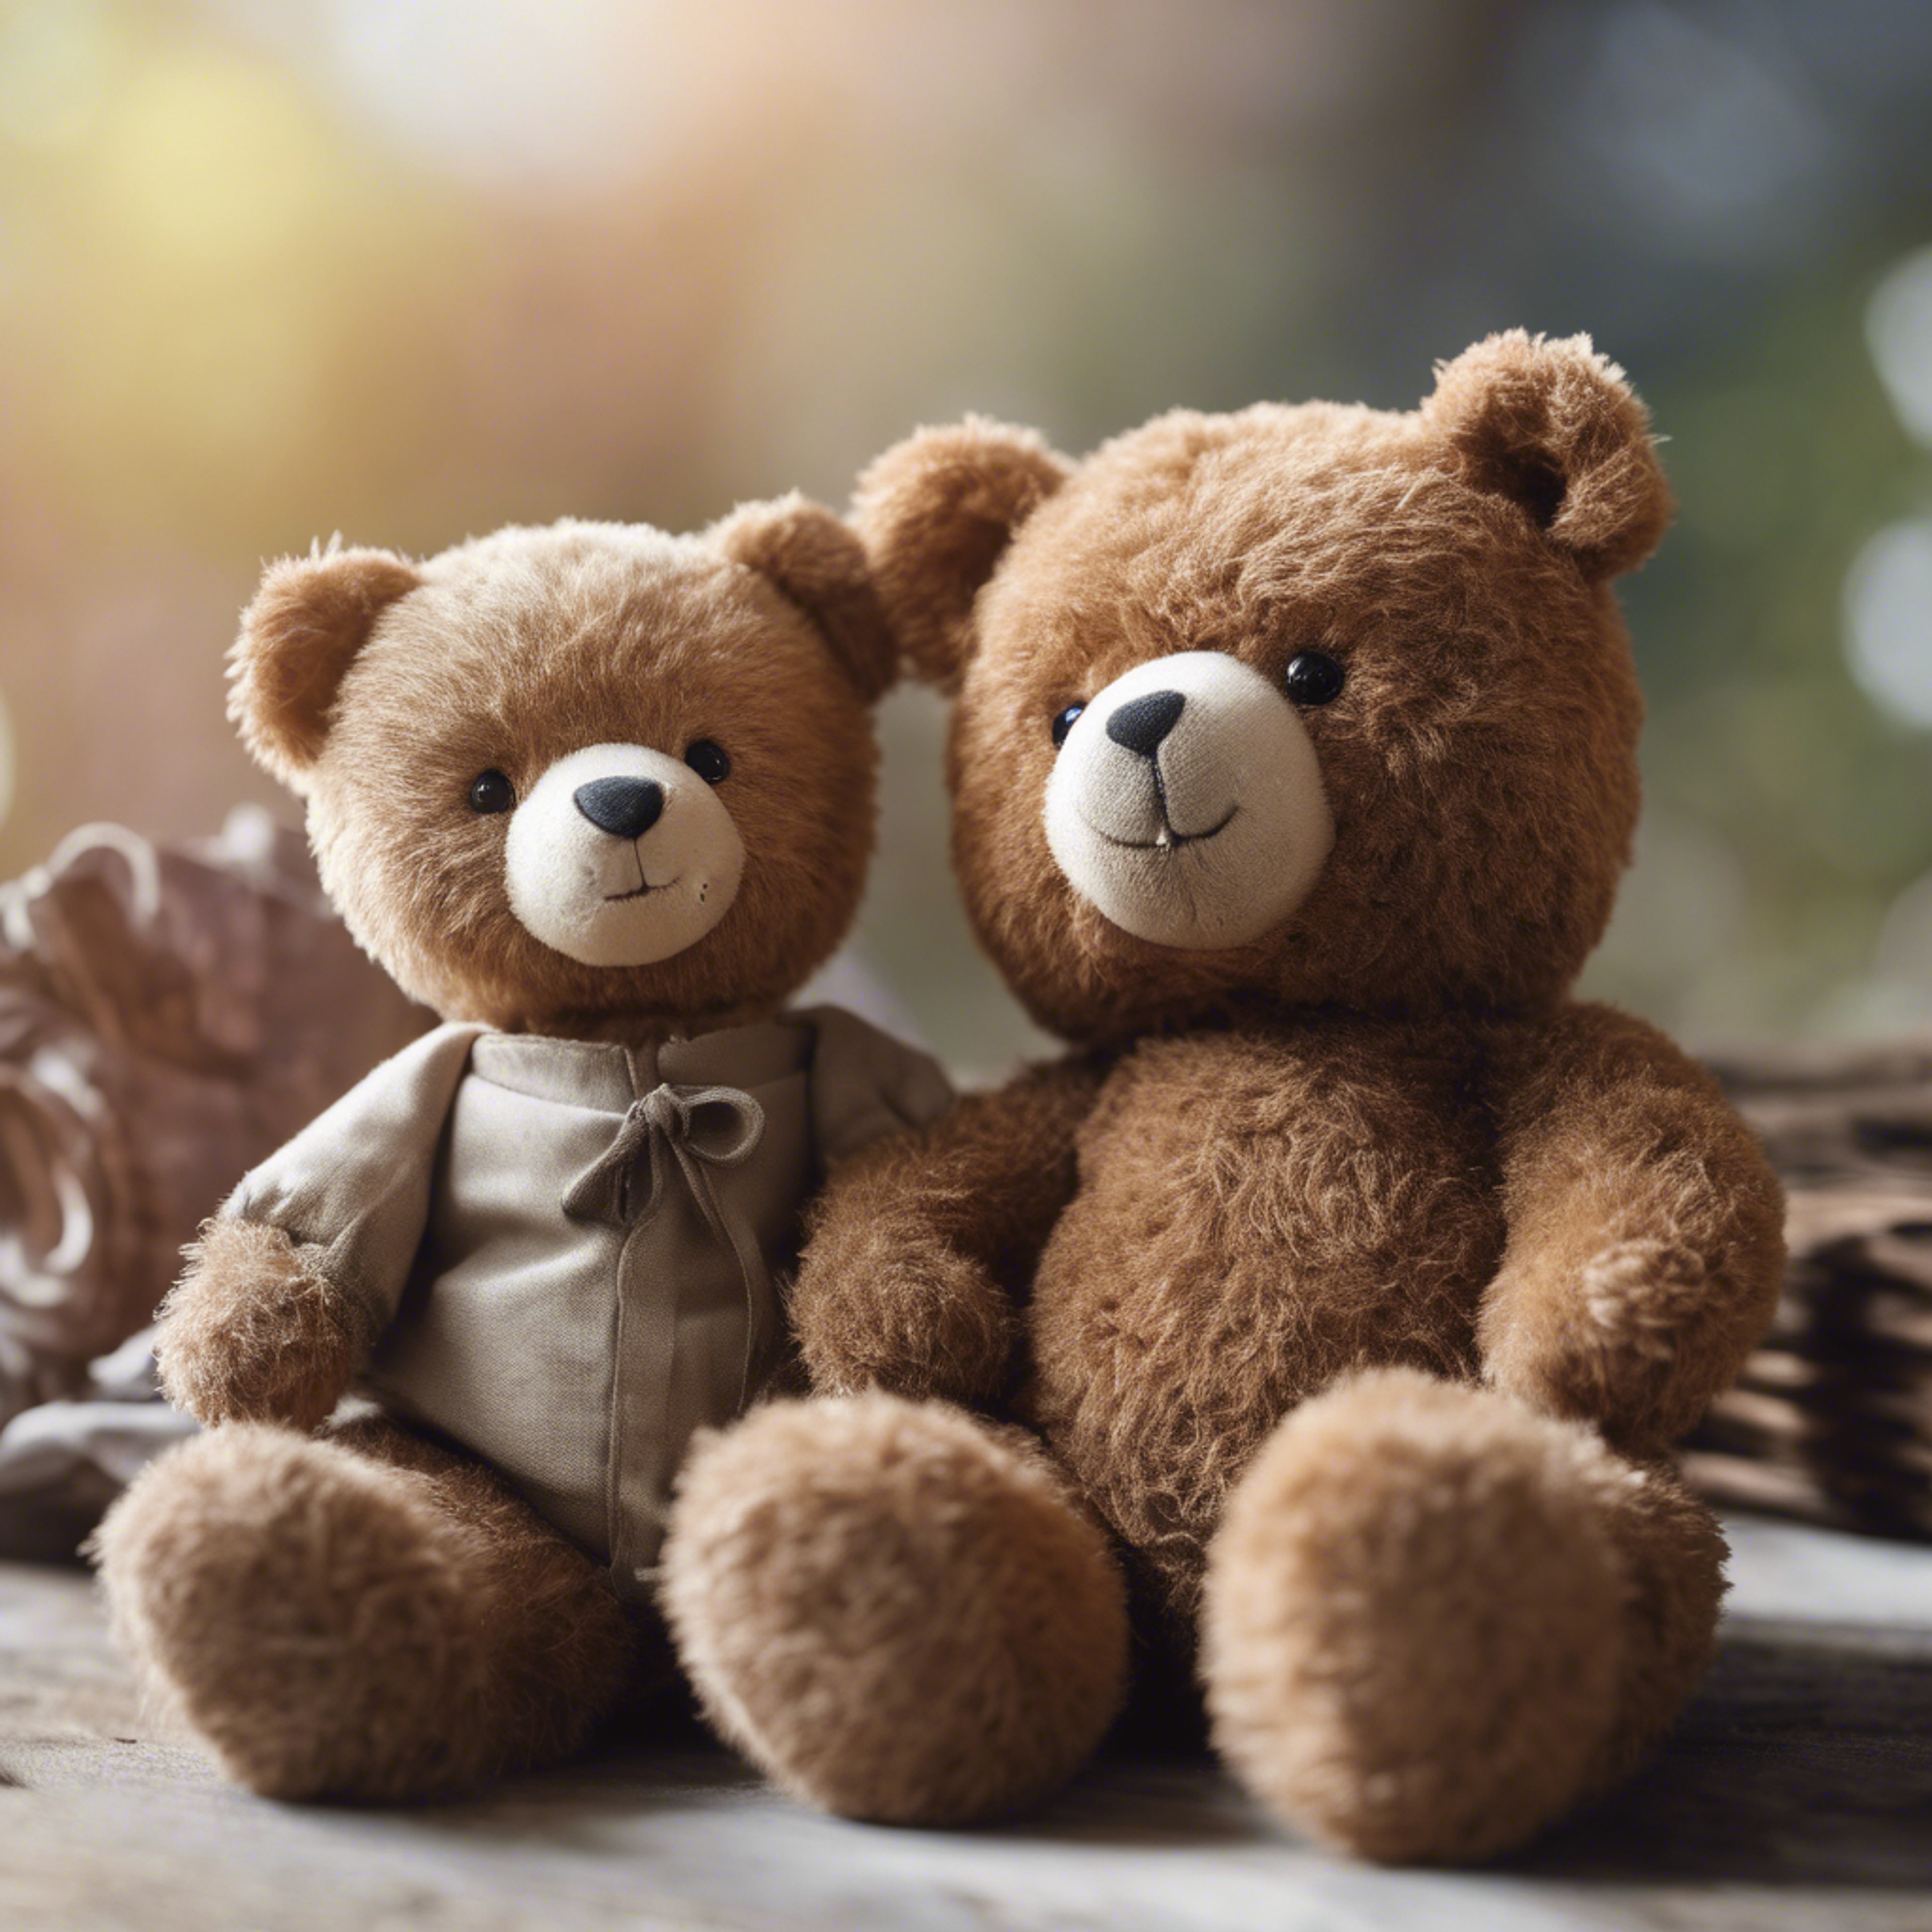 A teddy bear and a real bear cub sitting side by side comparing sizes. Тапет[ecf7dbb664a44b6083b1]